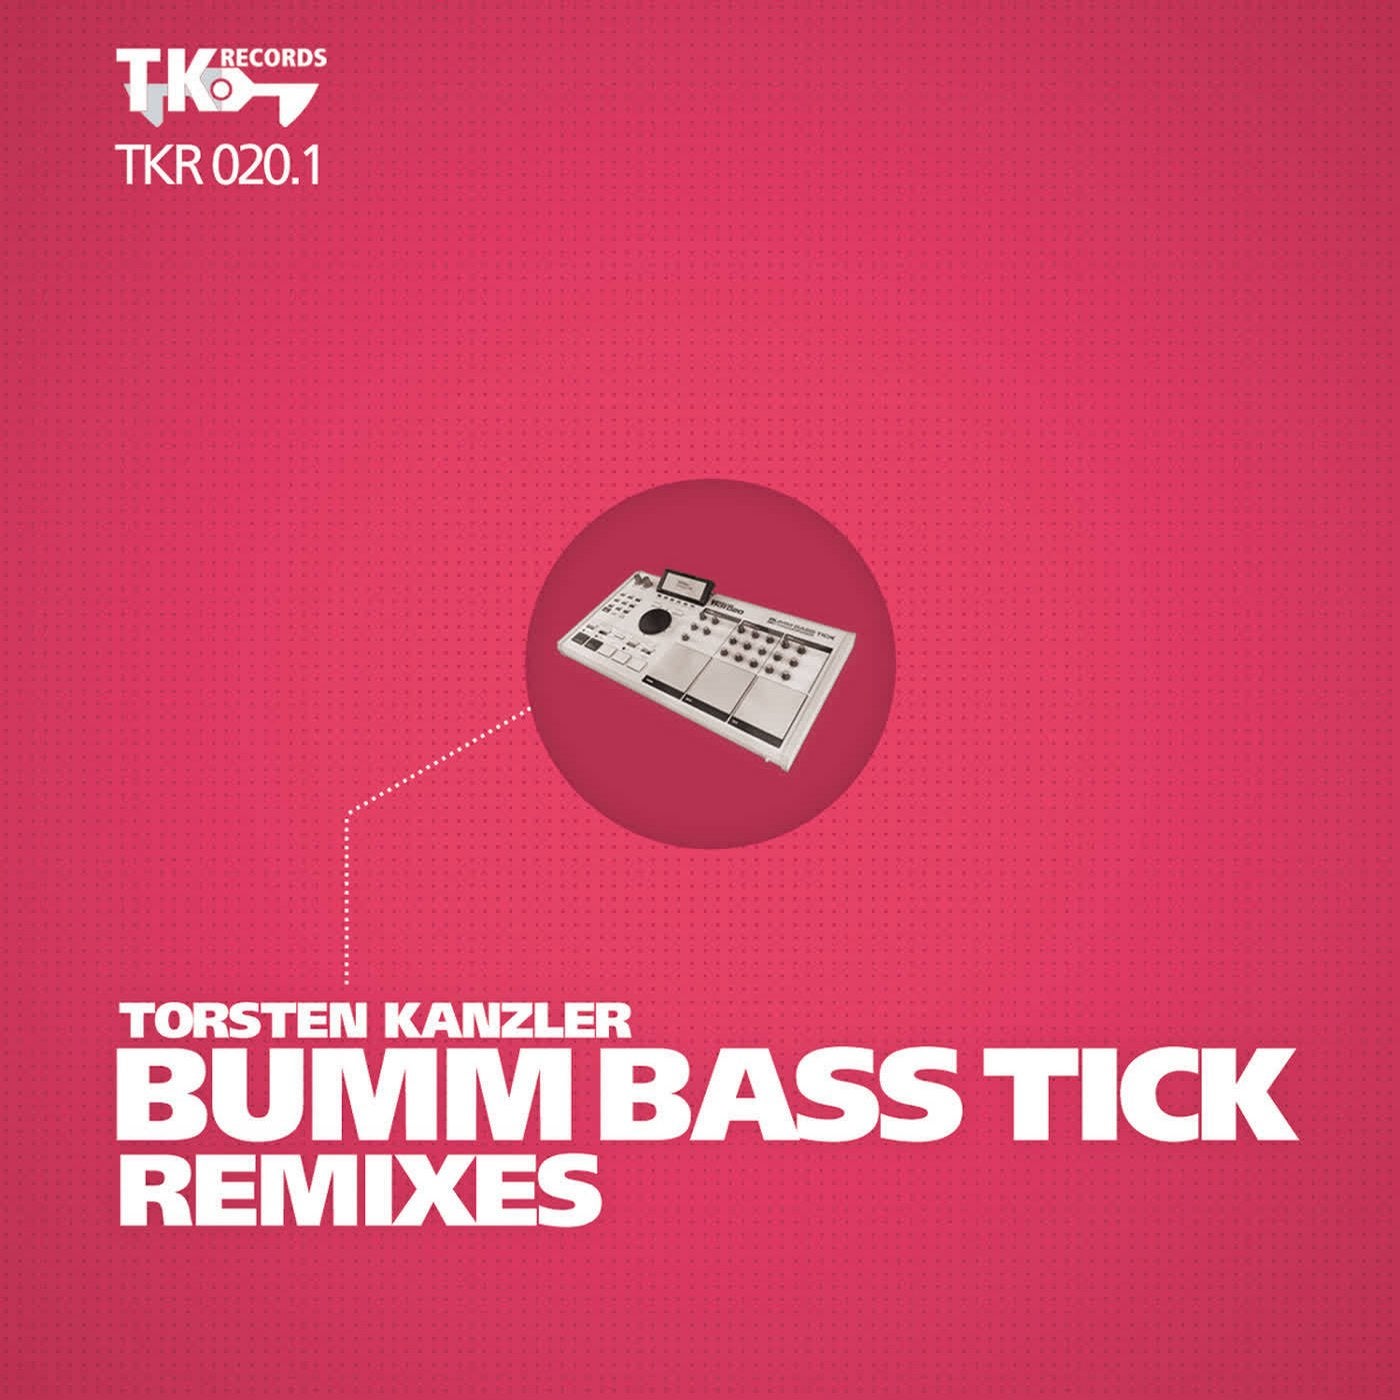 Bumm Bass Tick Remixes (Part 1)